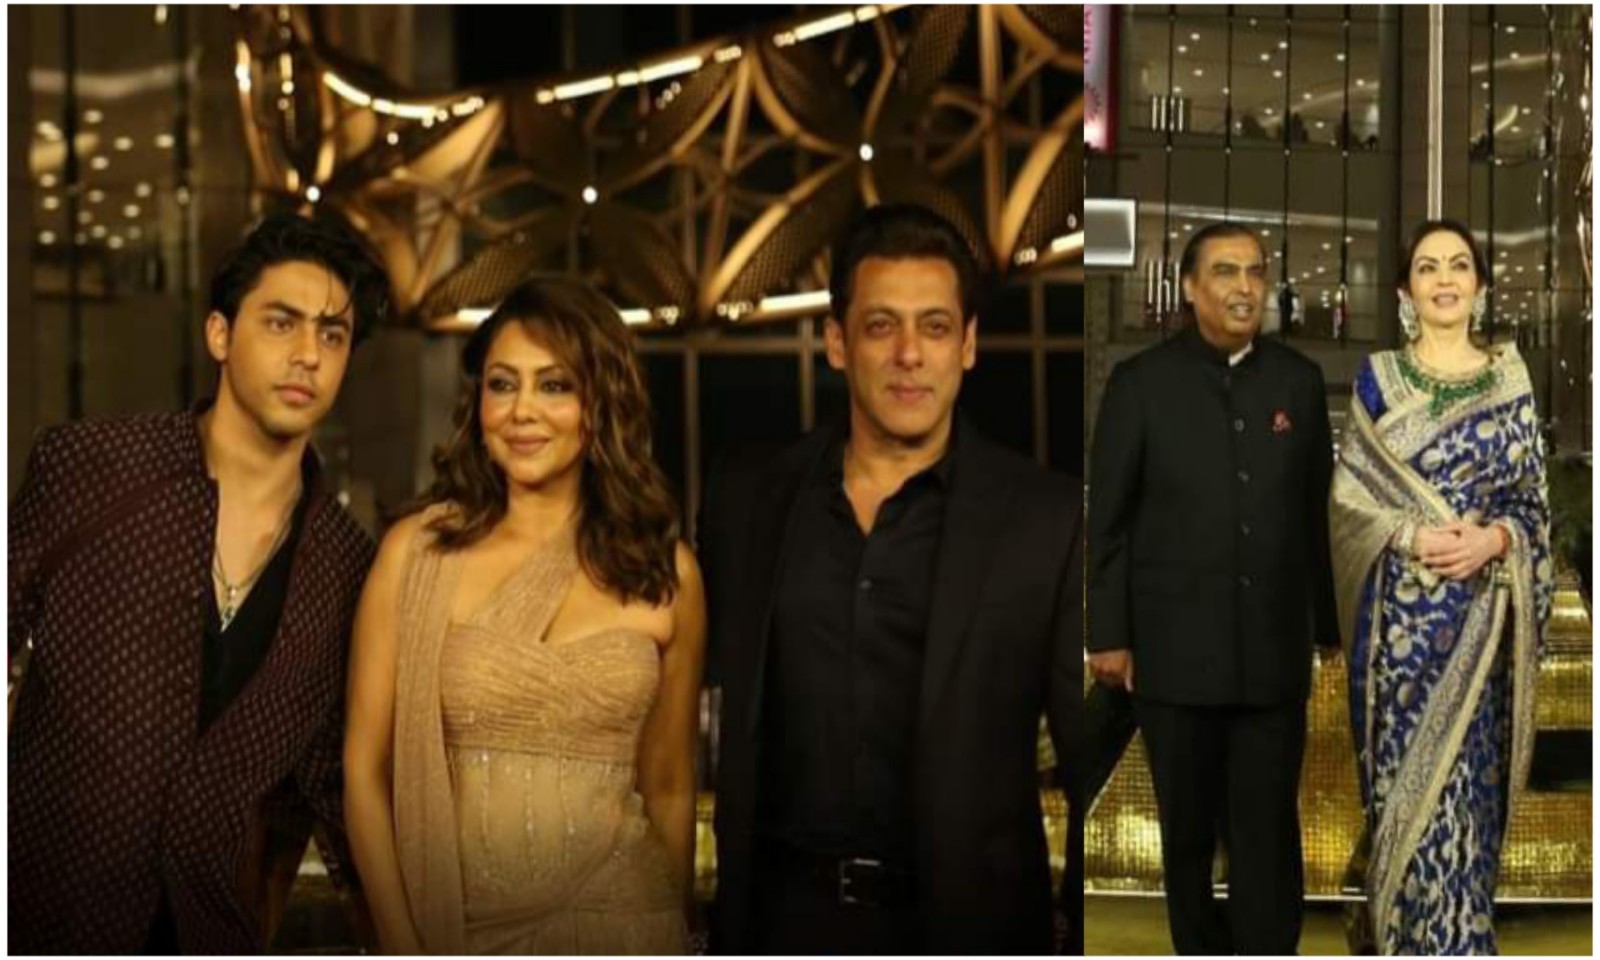 मुंबई में नीता मुकेश अंबानी कल्चरल सेंटर के उद्घाटन में फ़िल्मी सितारों का लगा जमावड़ा, गौरी खान के साथ दिखे सलमान, देखें तस्वीरें..